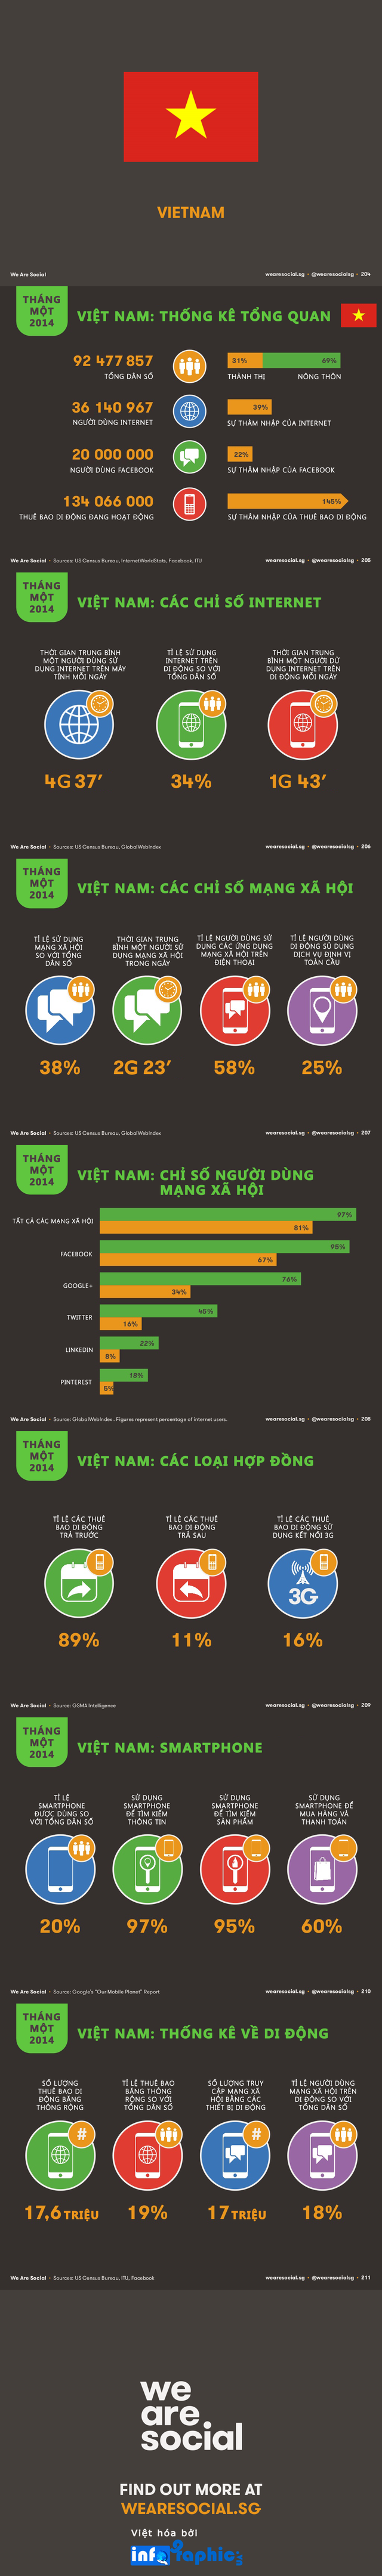 Báo cáo tình hình nội dung số Việt Nam 2014: Người dùng mạng xã hội online lâu nhất khu vực